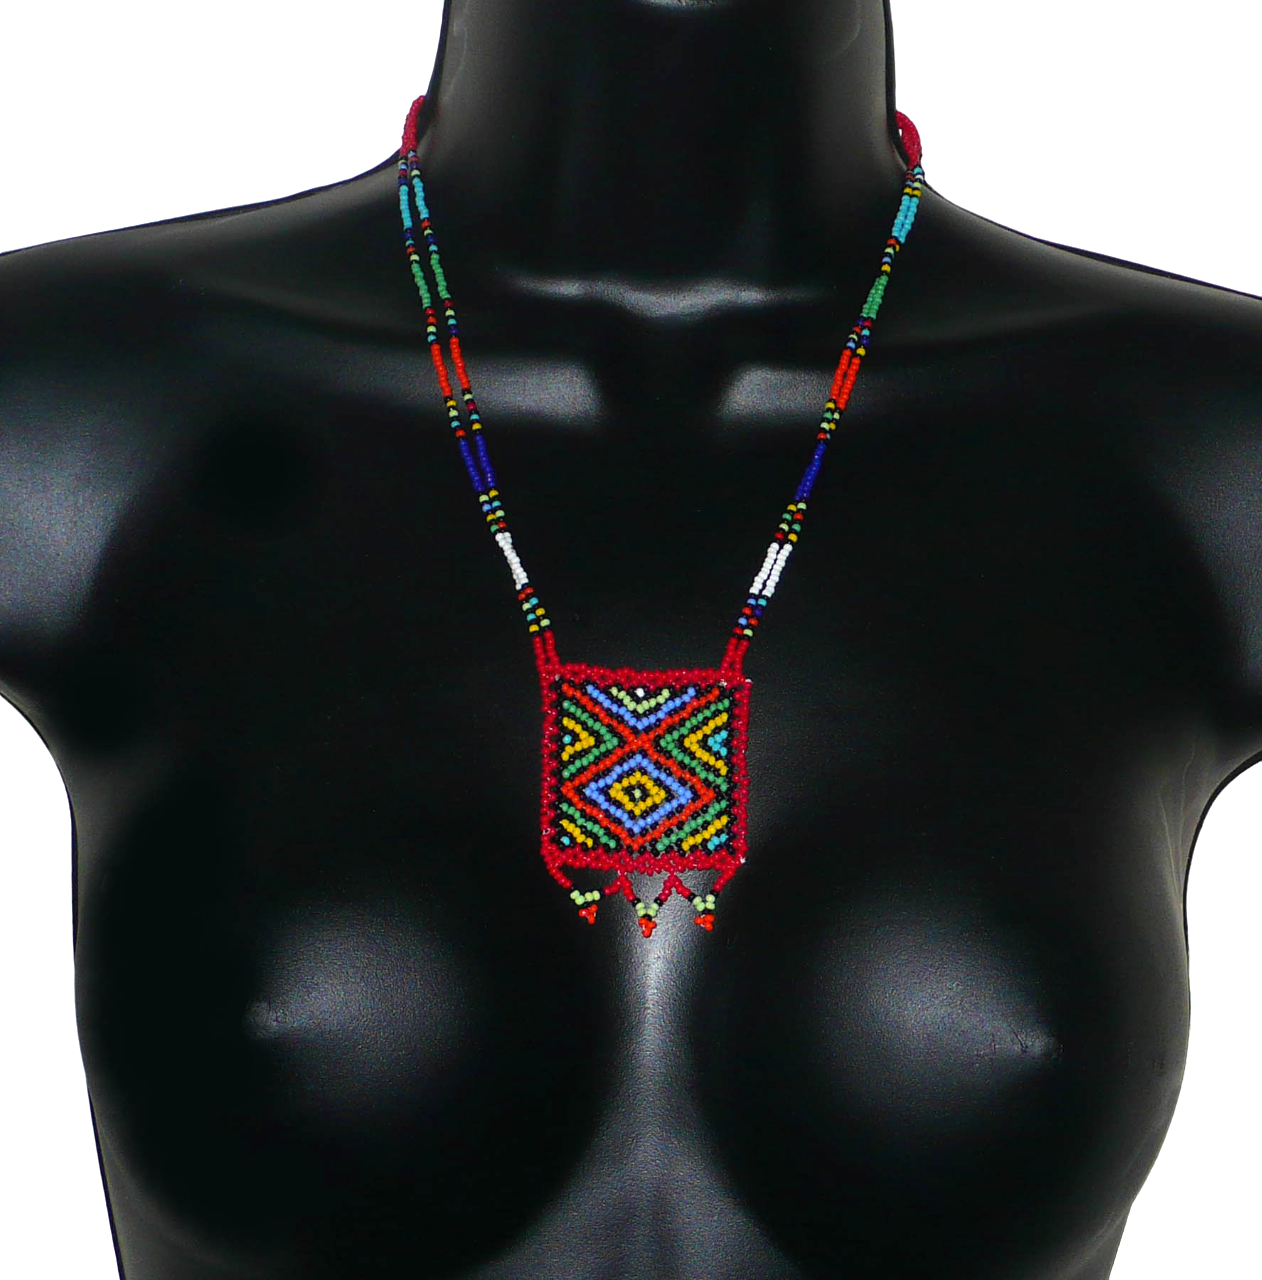 Collier africain en perles de rocaille rouges et multicolores agrémenté d'un pendentif carré à motifs ethniques. Il mesure 27,5 cm de long (en partant de la nuque jusqu'à la base du pendentif), le pendentif mesure 5,5 cm sur 4,5 cm ; le collier s'attache avec un fermoir à boule. Timeless Fineries